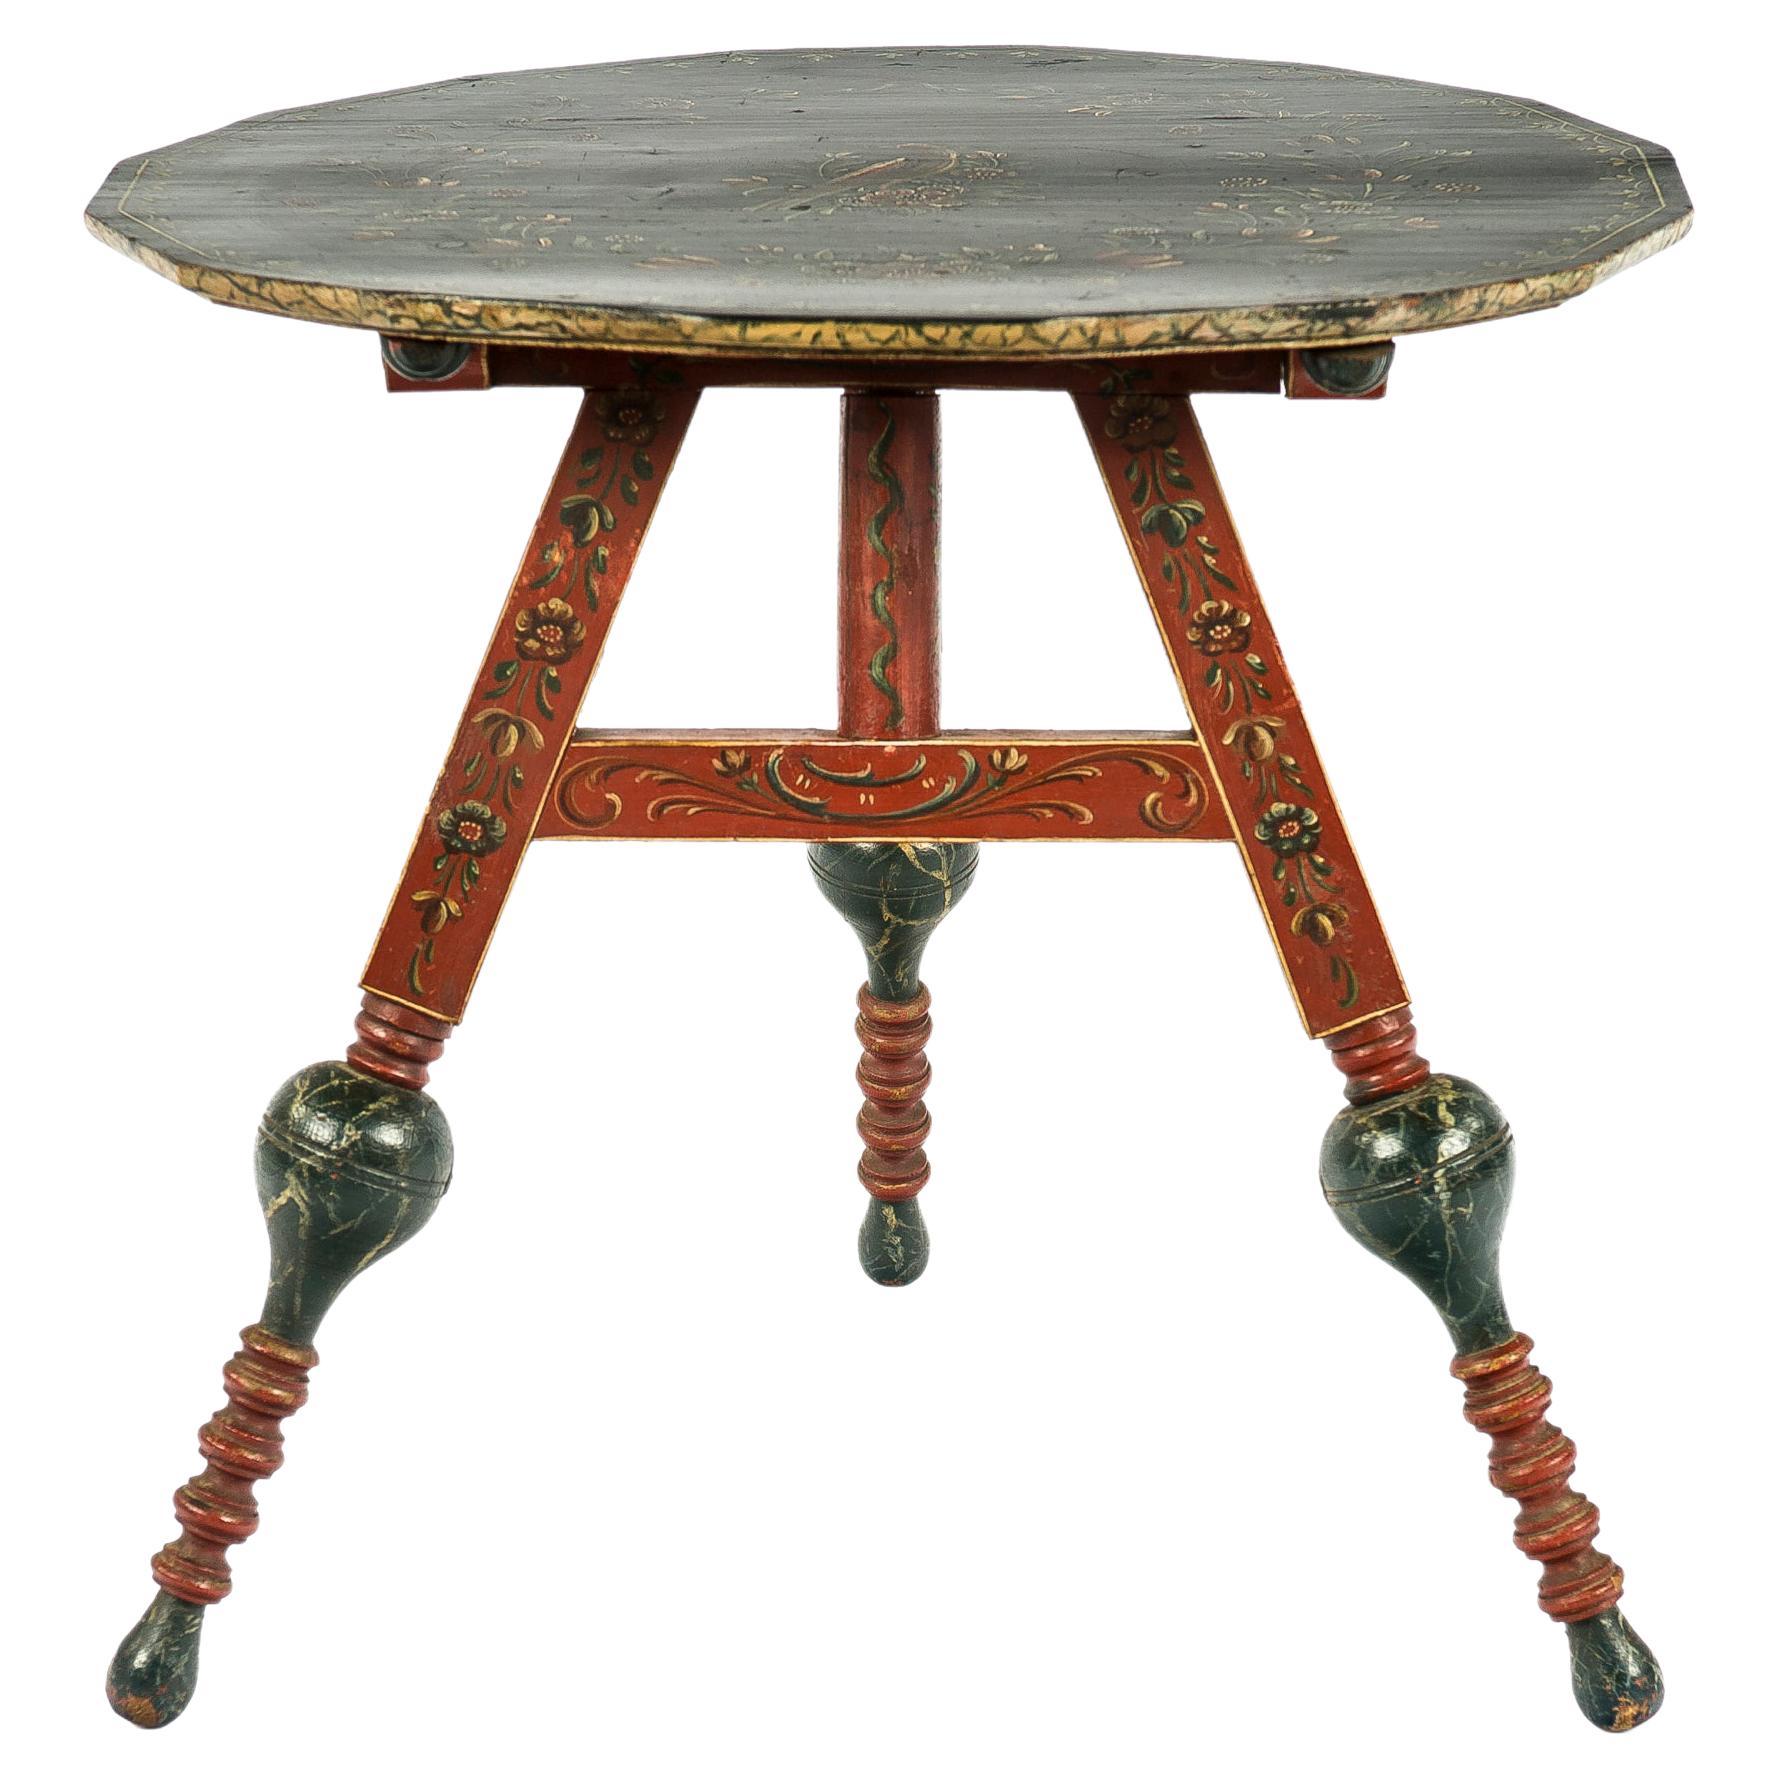 Antiker niederländischer Hindeloopen-Tisch mit Kachelplatte aus dem frühen 19. Jahrhundert